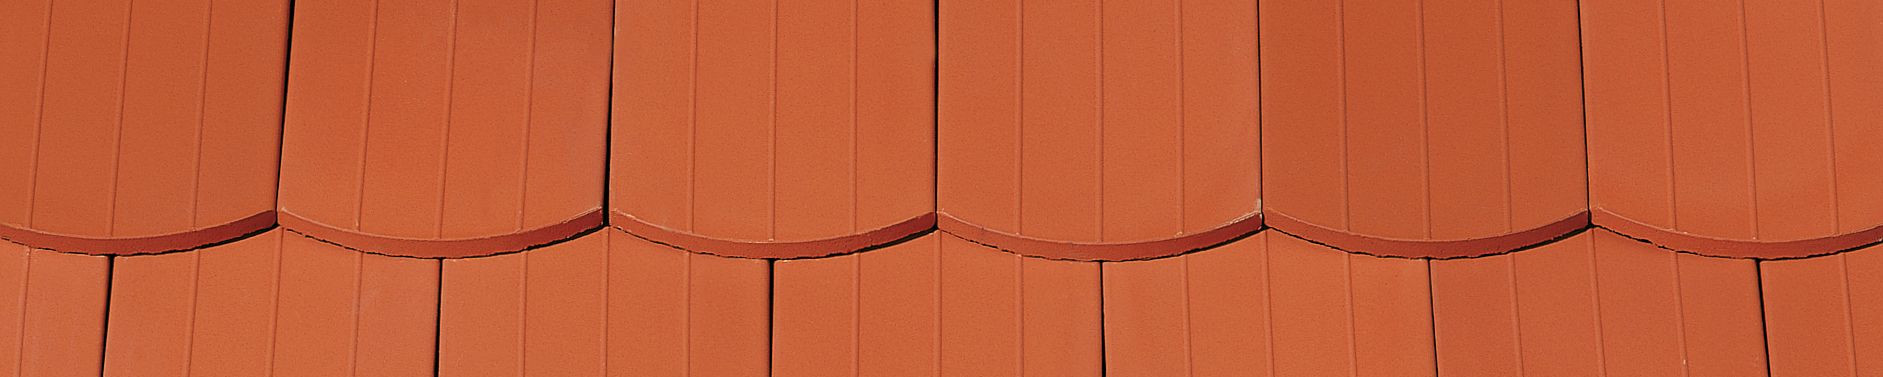 KERA-BIBER PROFIL Saxony plain tile natural red